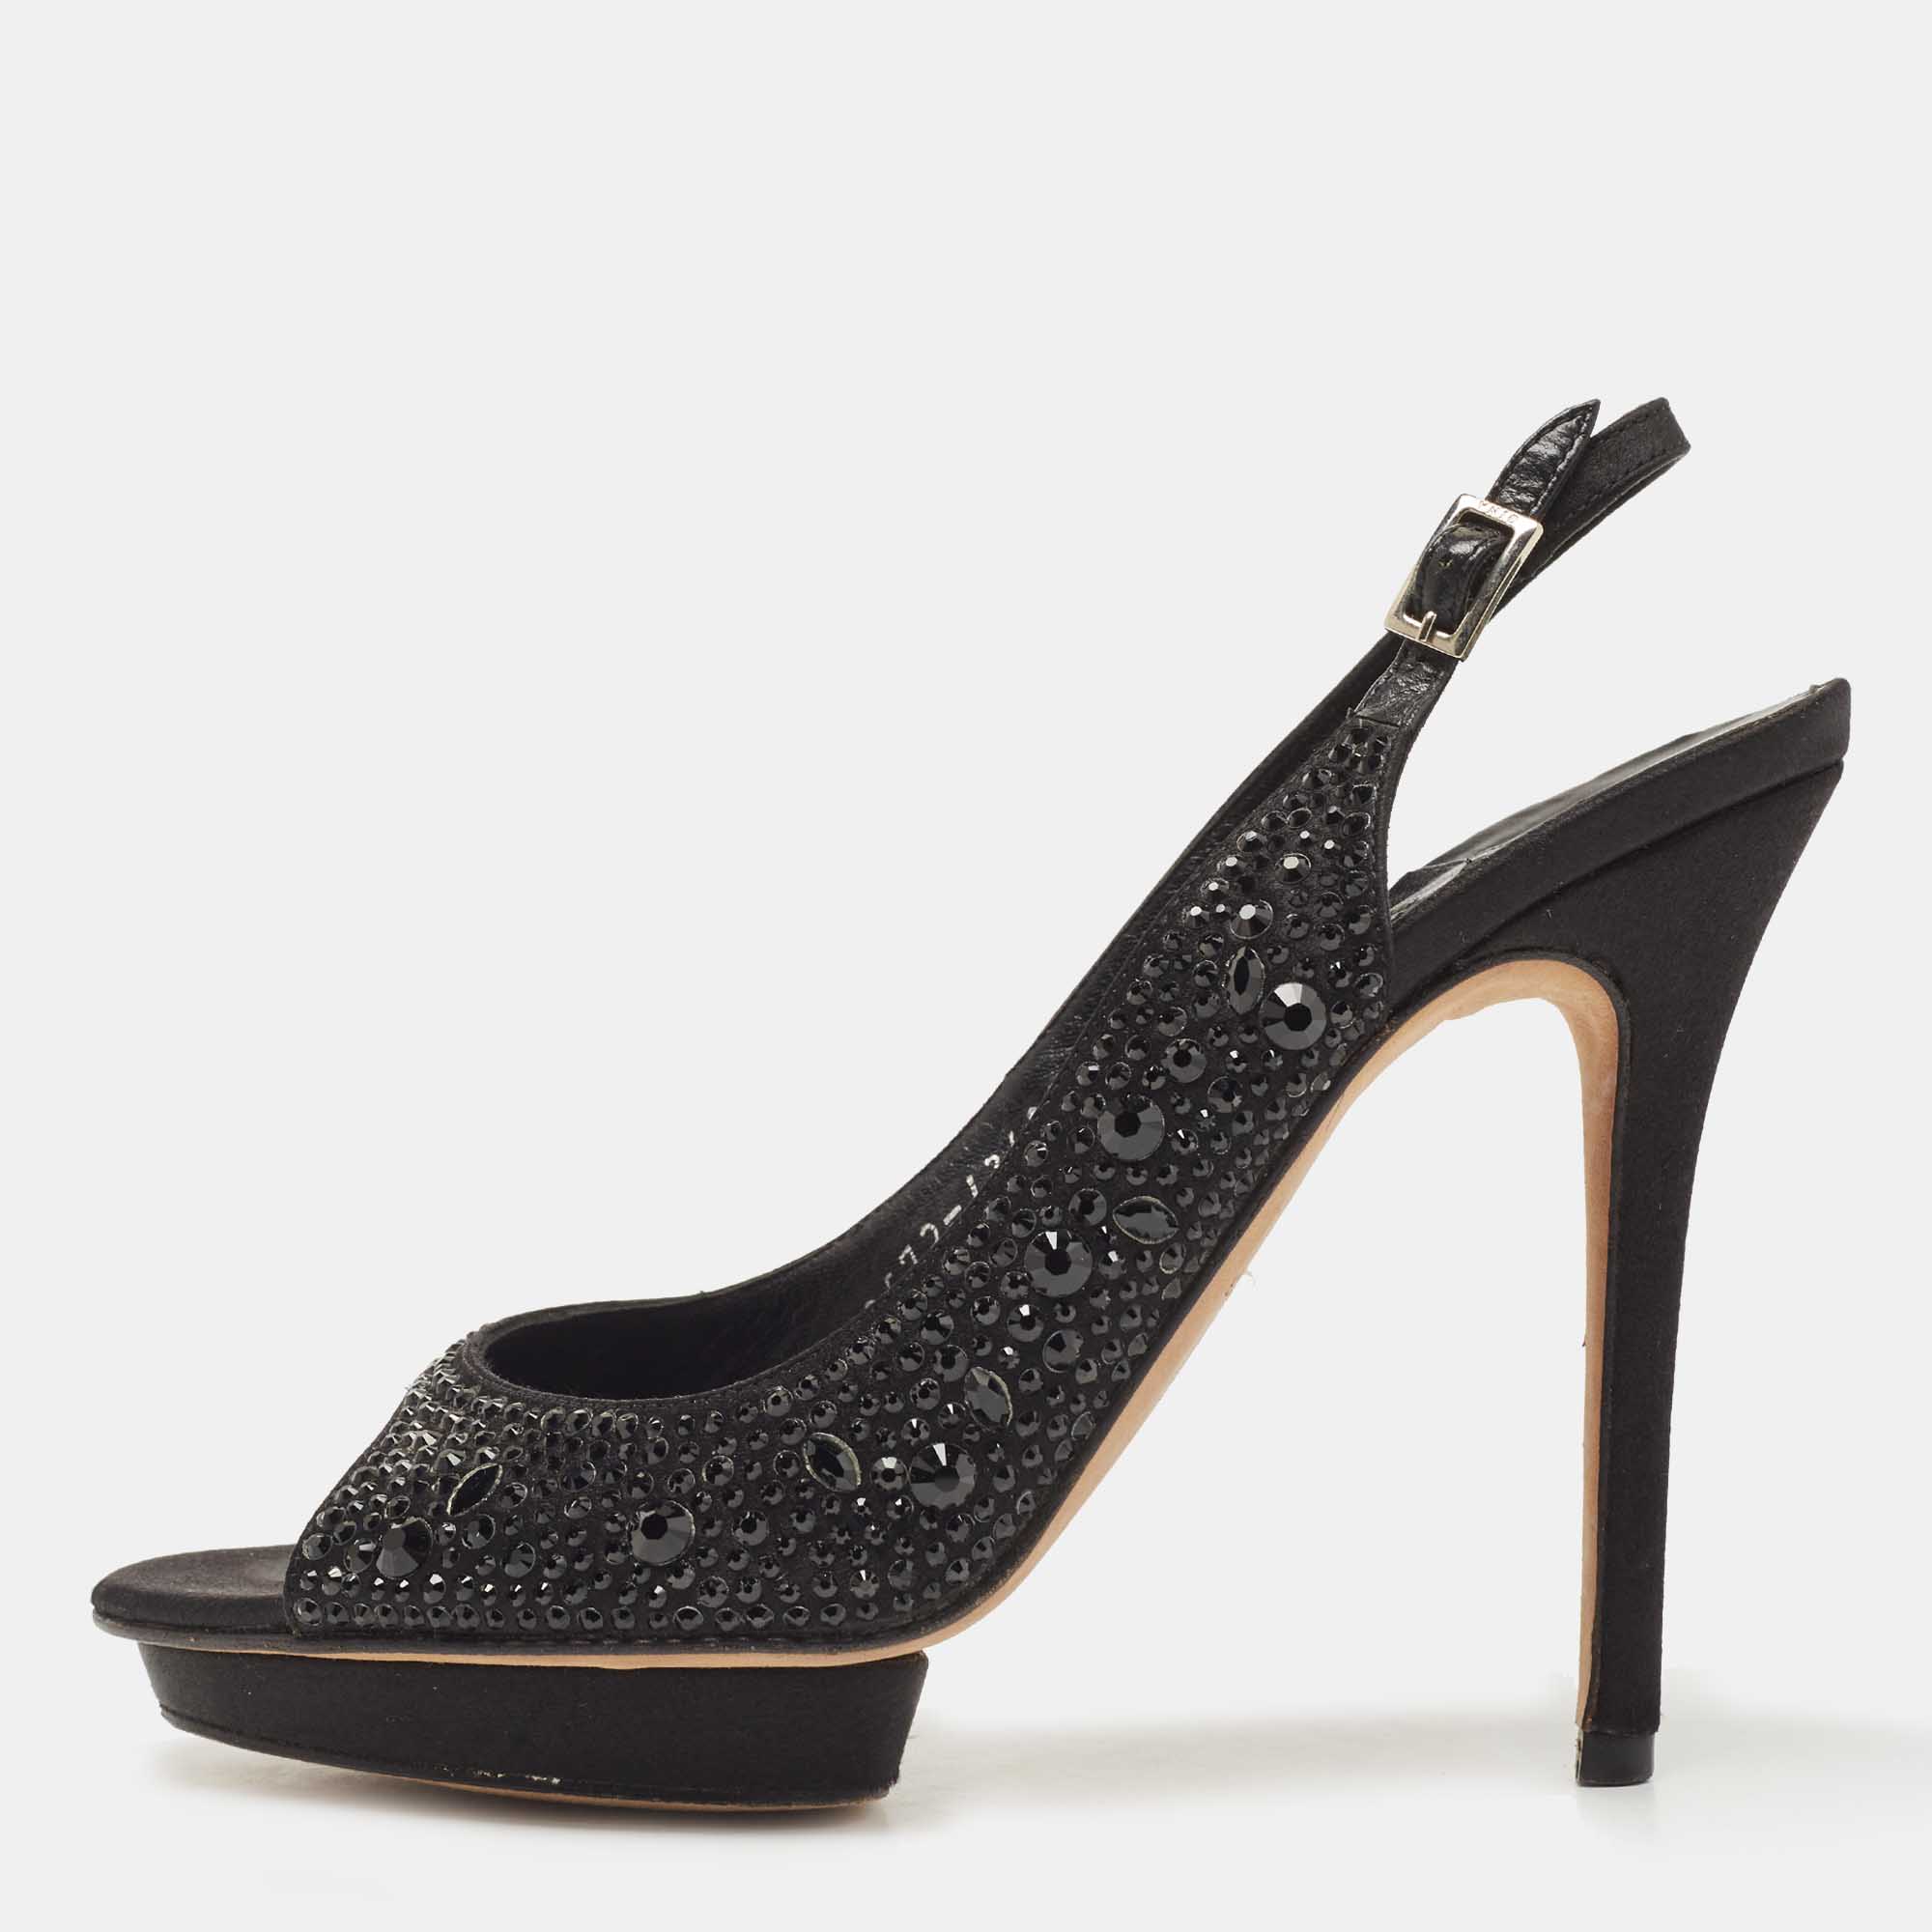 Pre-owned Gina Black Crystal Embellished Satin Slingback Sandals Size 38.5